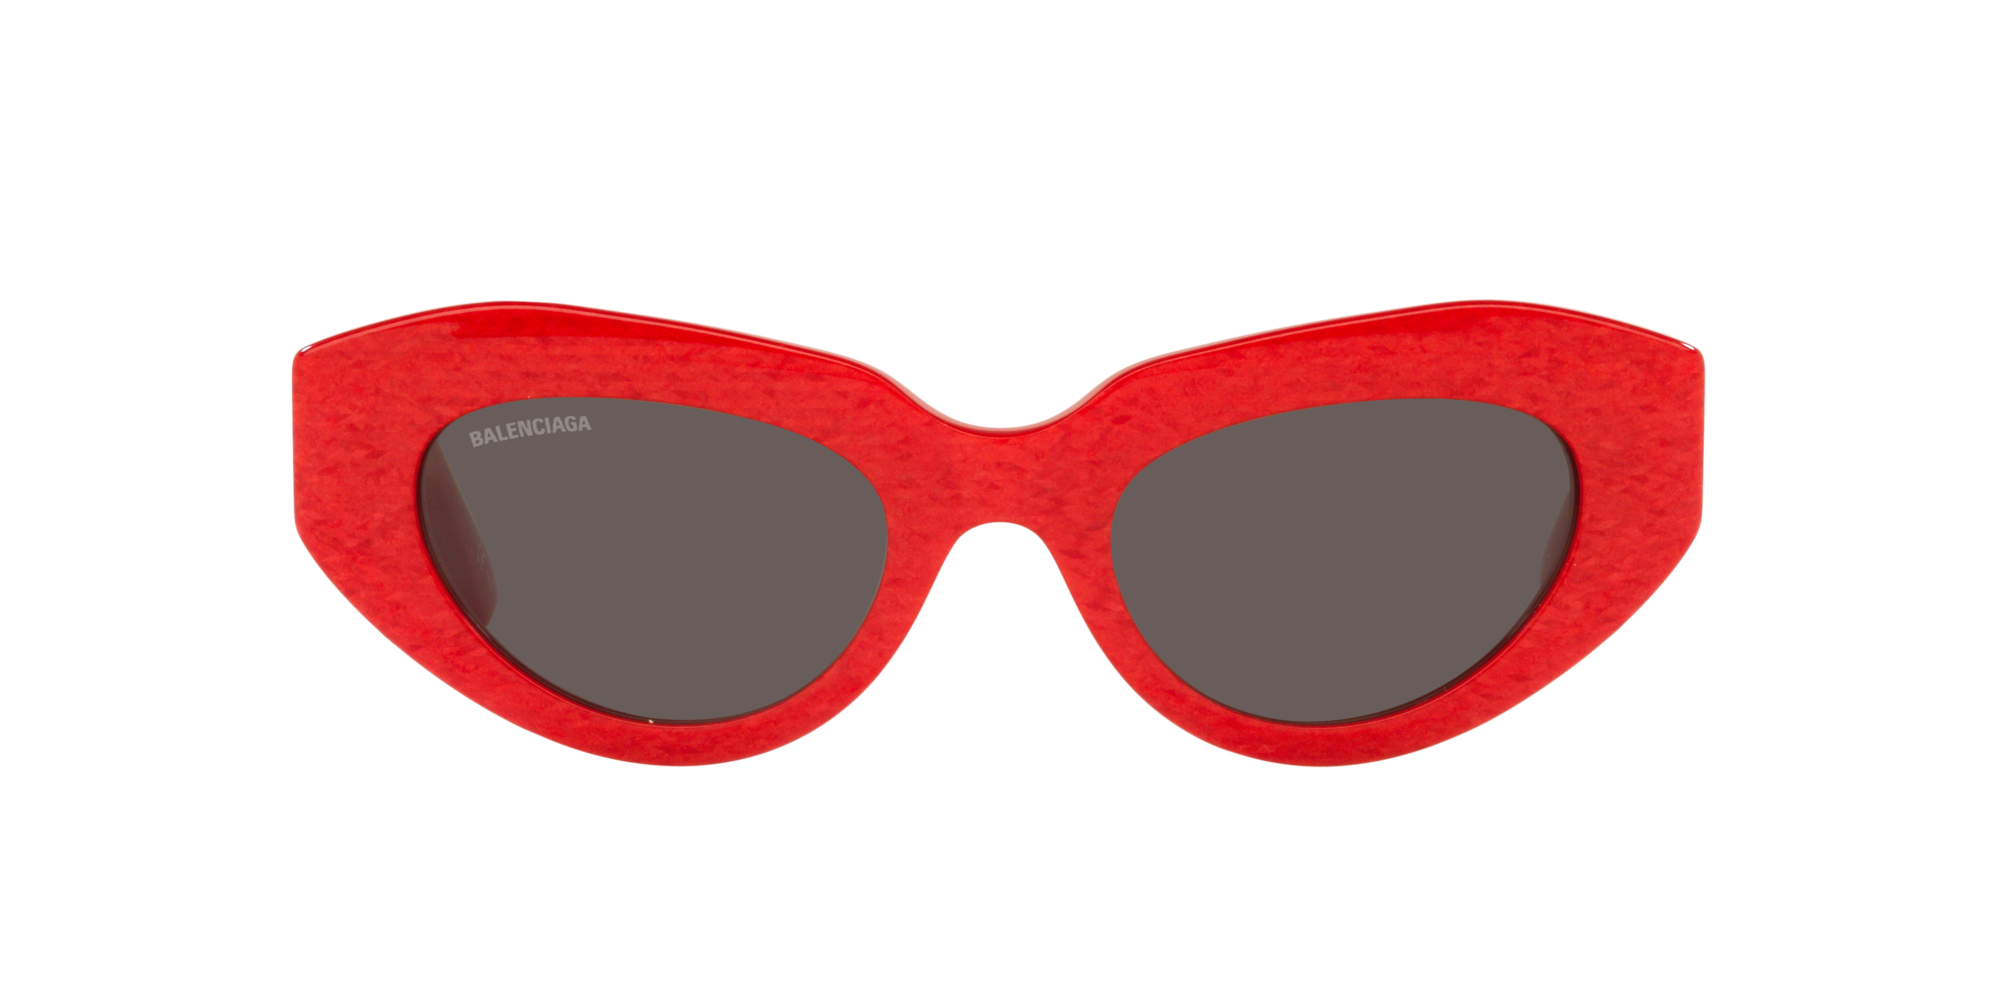 Balenciaga BB0236S 52 Grey & Red Sunglasses | Sunglass Hut USA